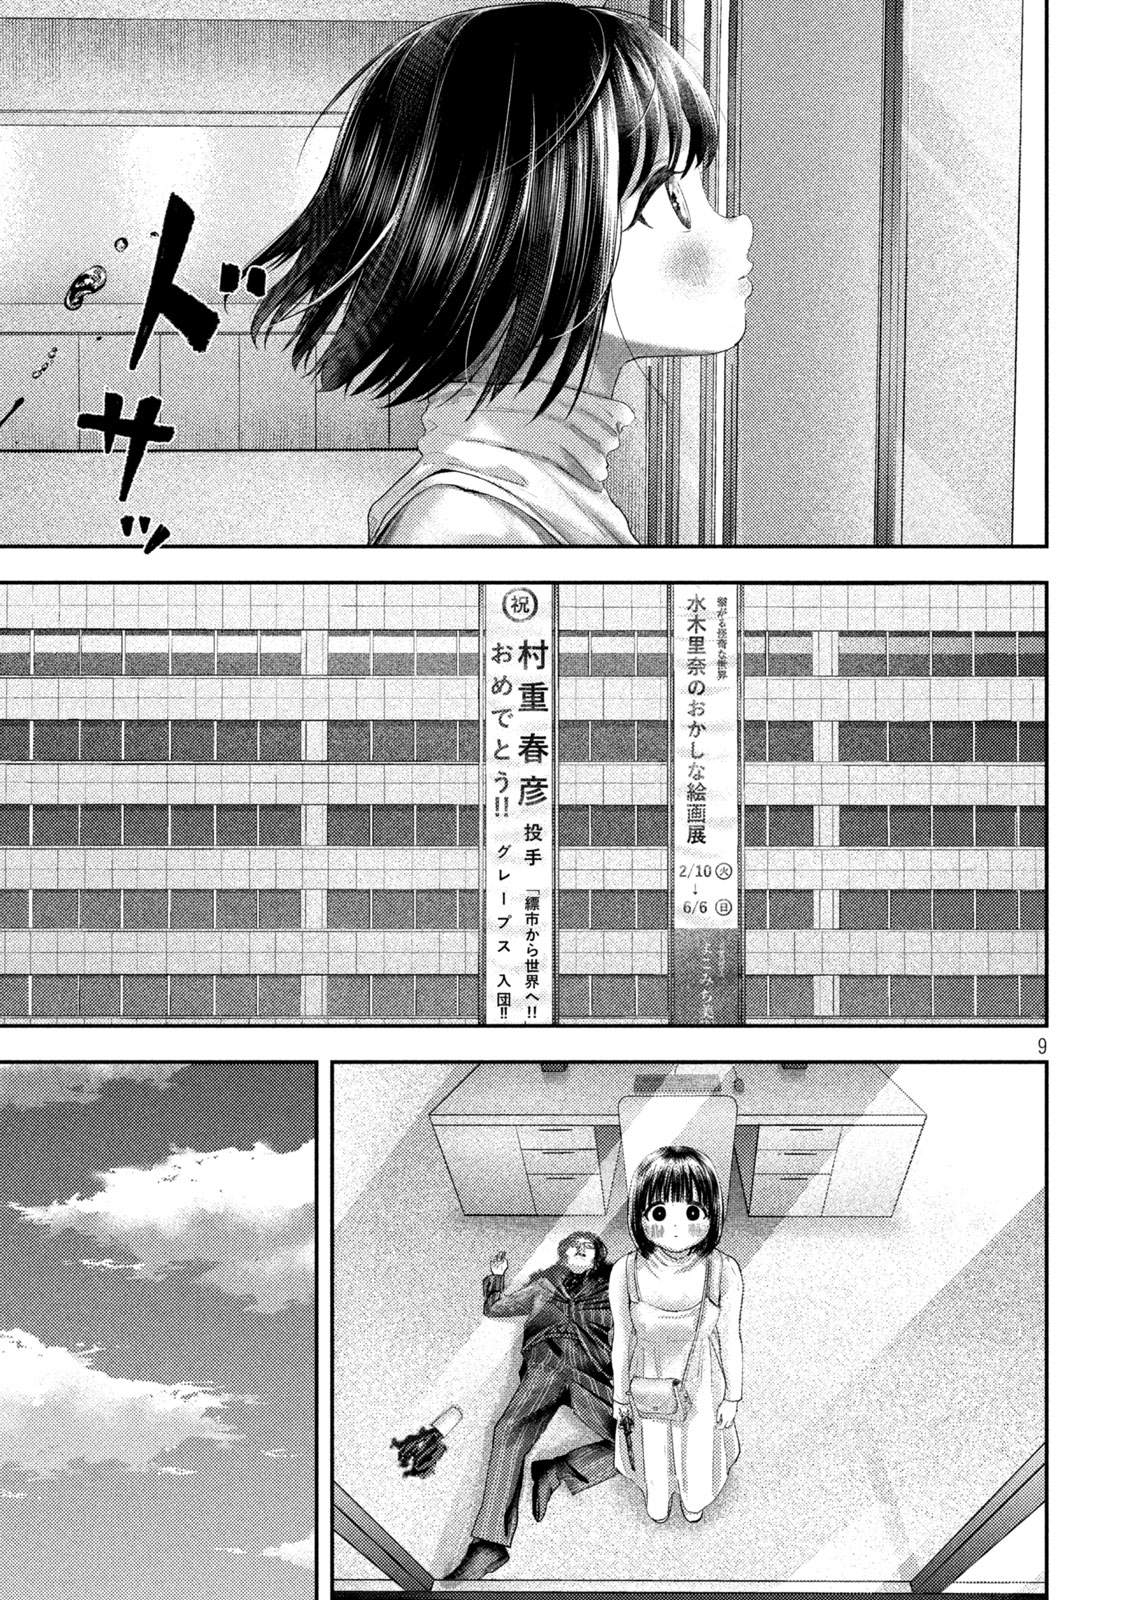 Nezumi no Koi - Chapter 29 - Page 10